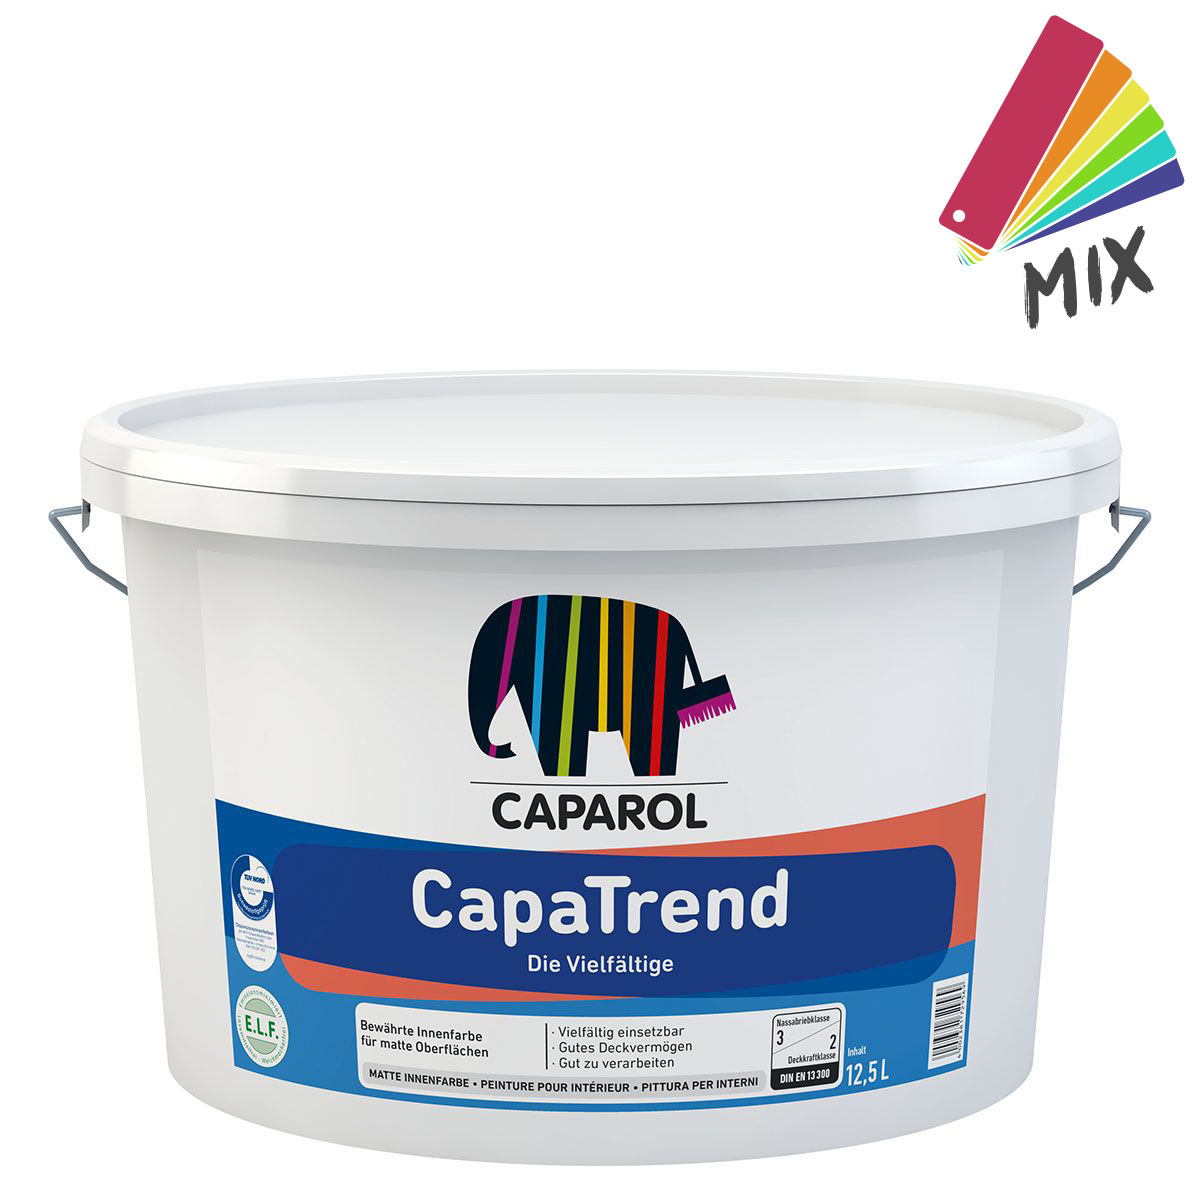 caparol_capatrend_12,5_mixicon_gross